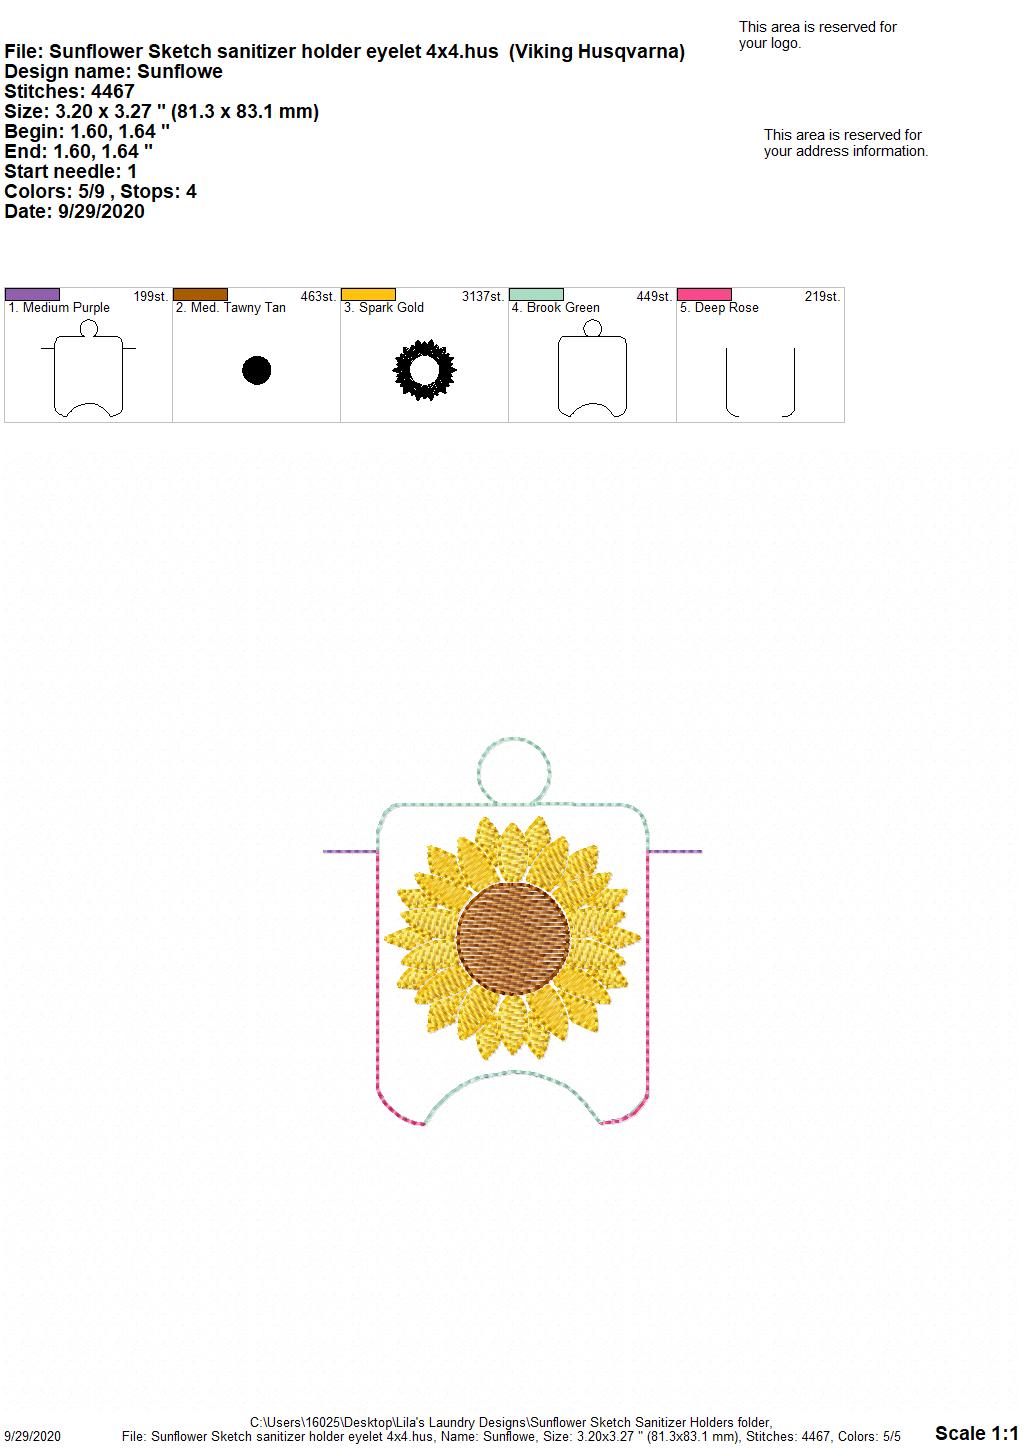 Sunflower Sketch Sanitizer Holders - DIGITAL Embroidery DESIGN